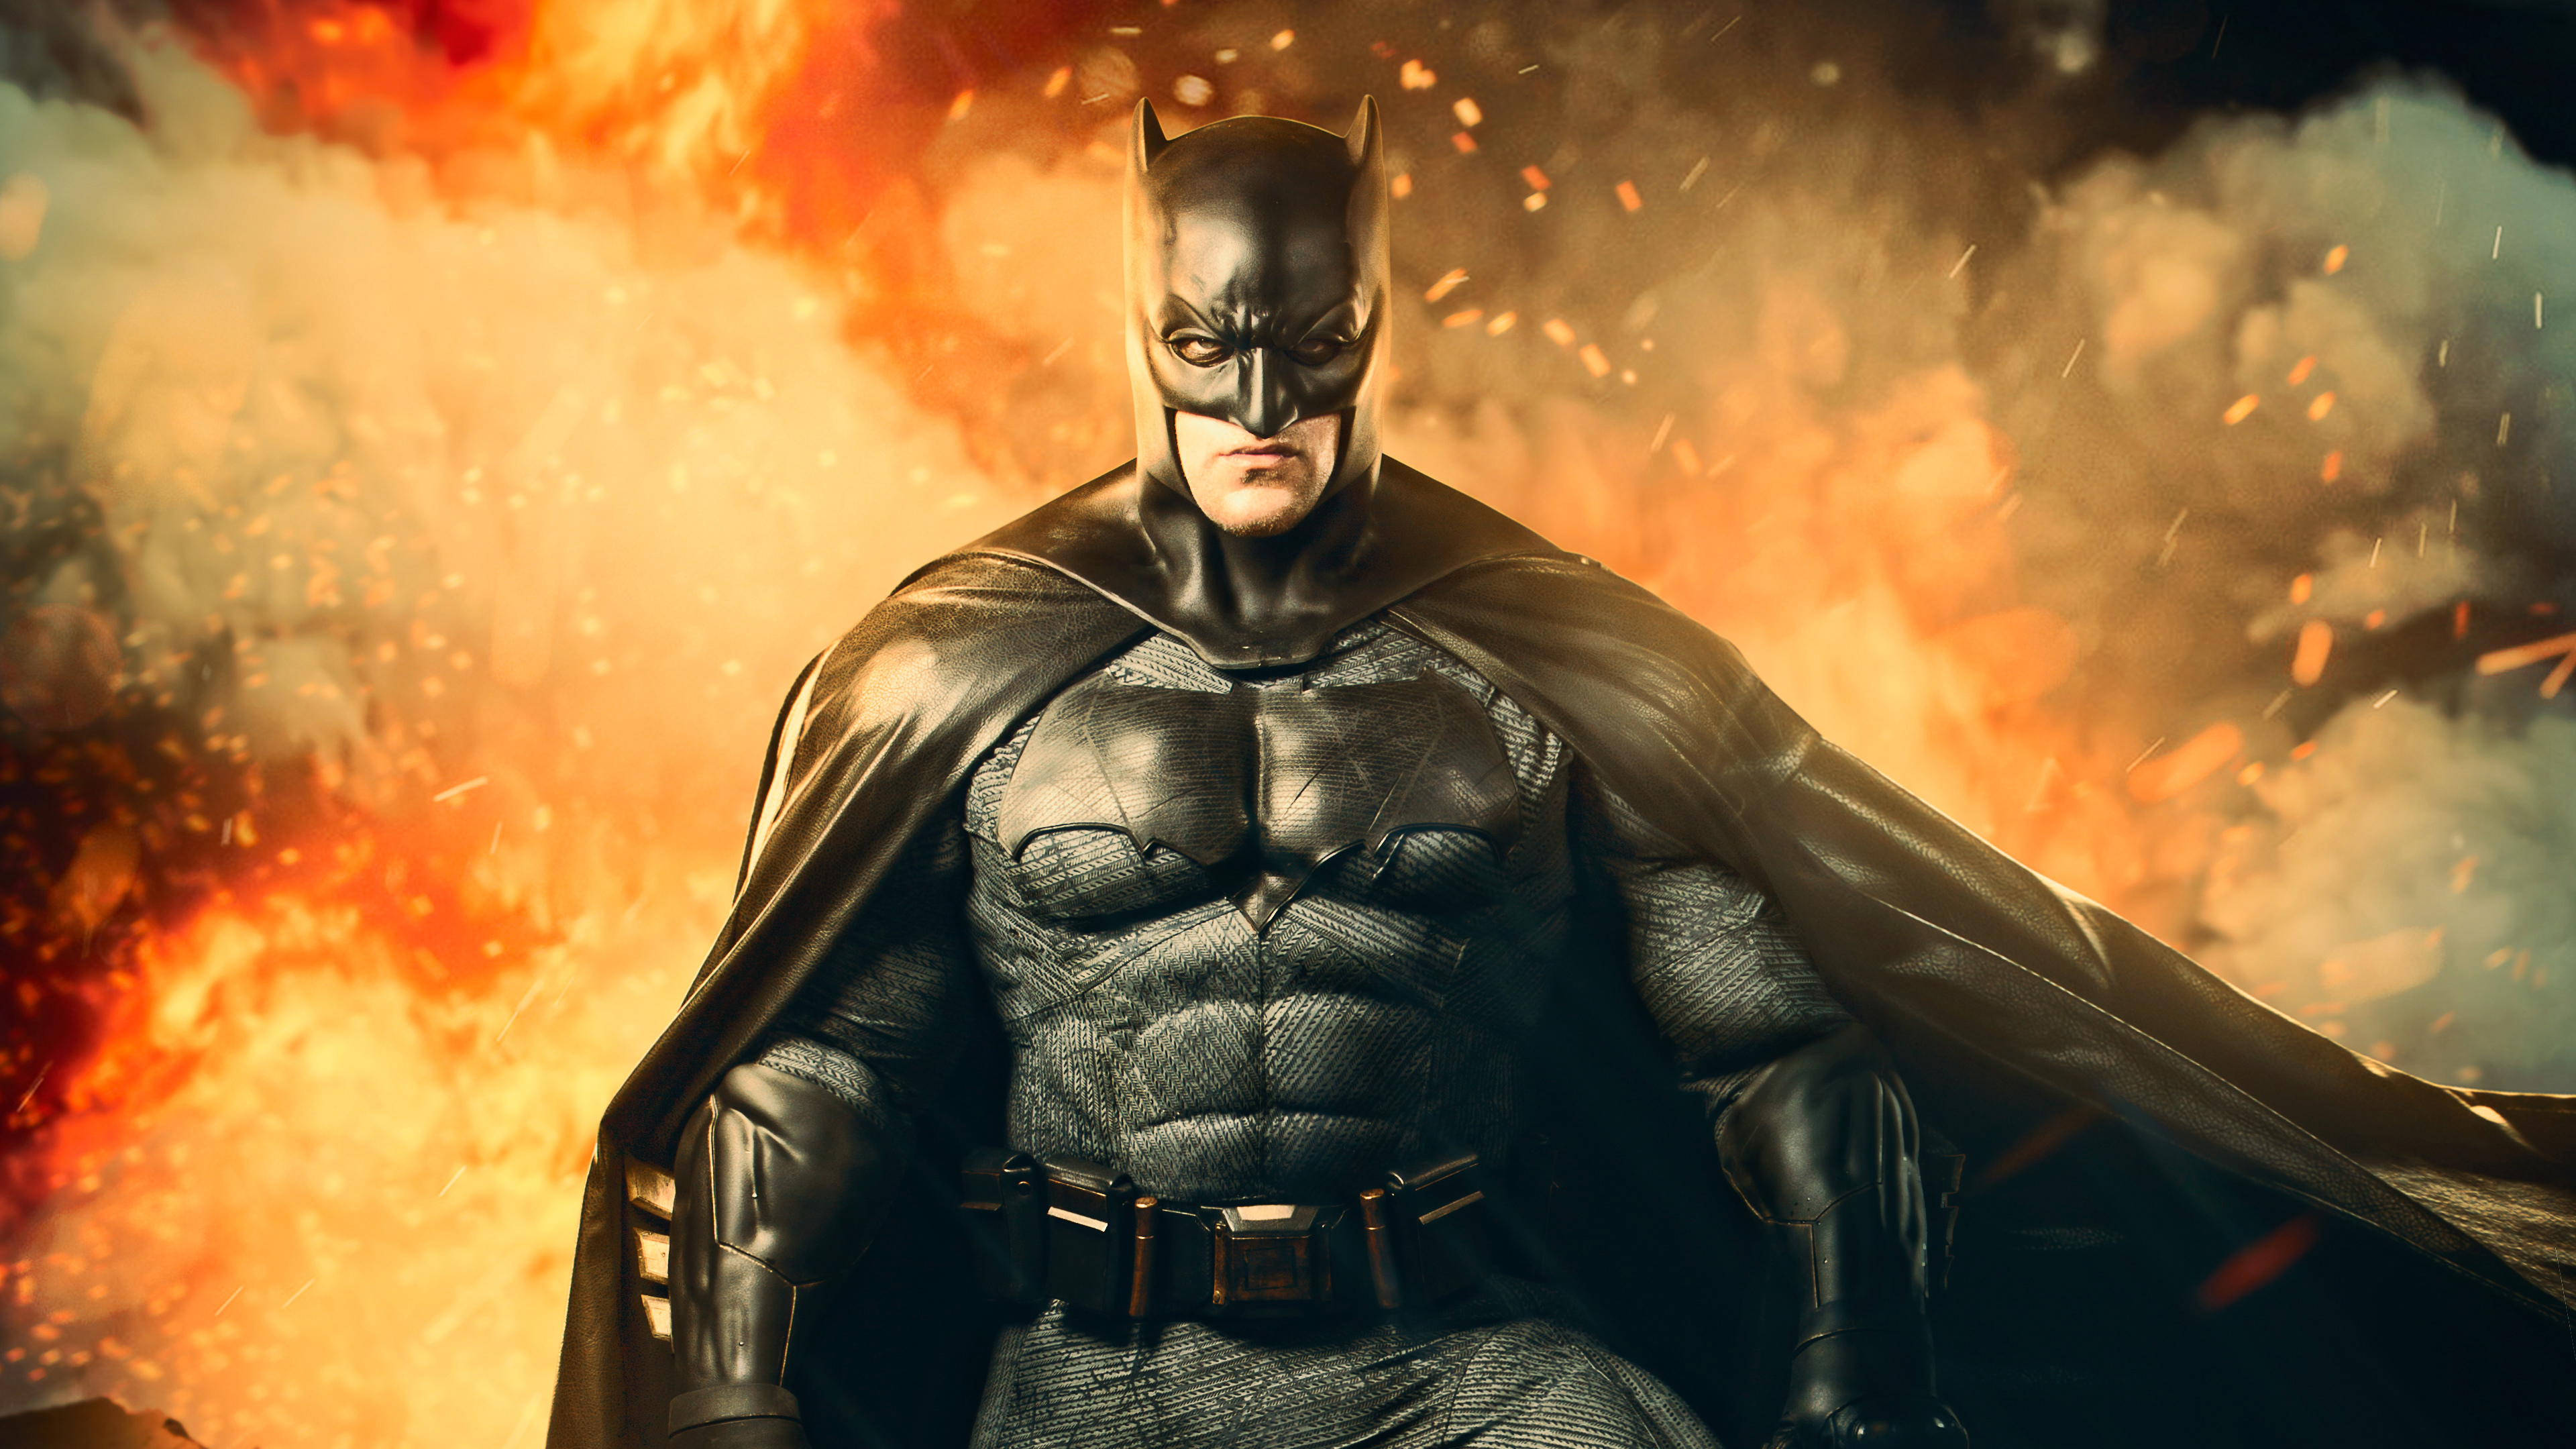 Batman 4k Cosplay superheroes wallpapers, hd-wallpapers ...